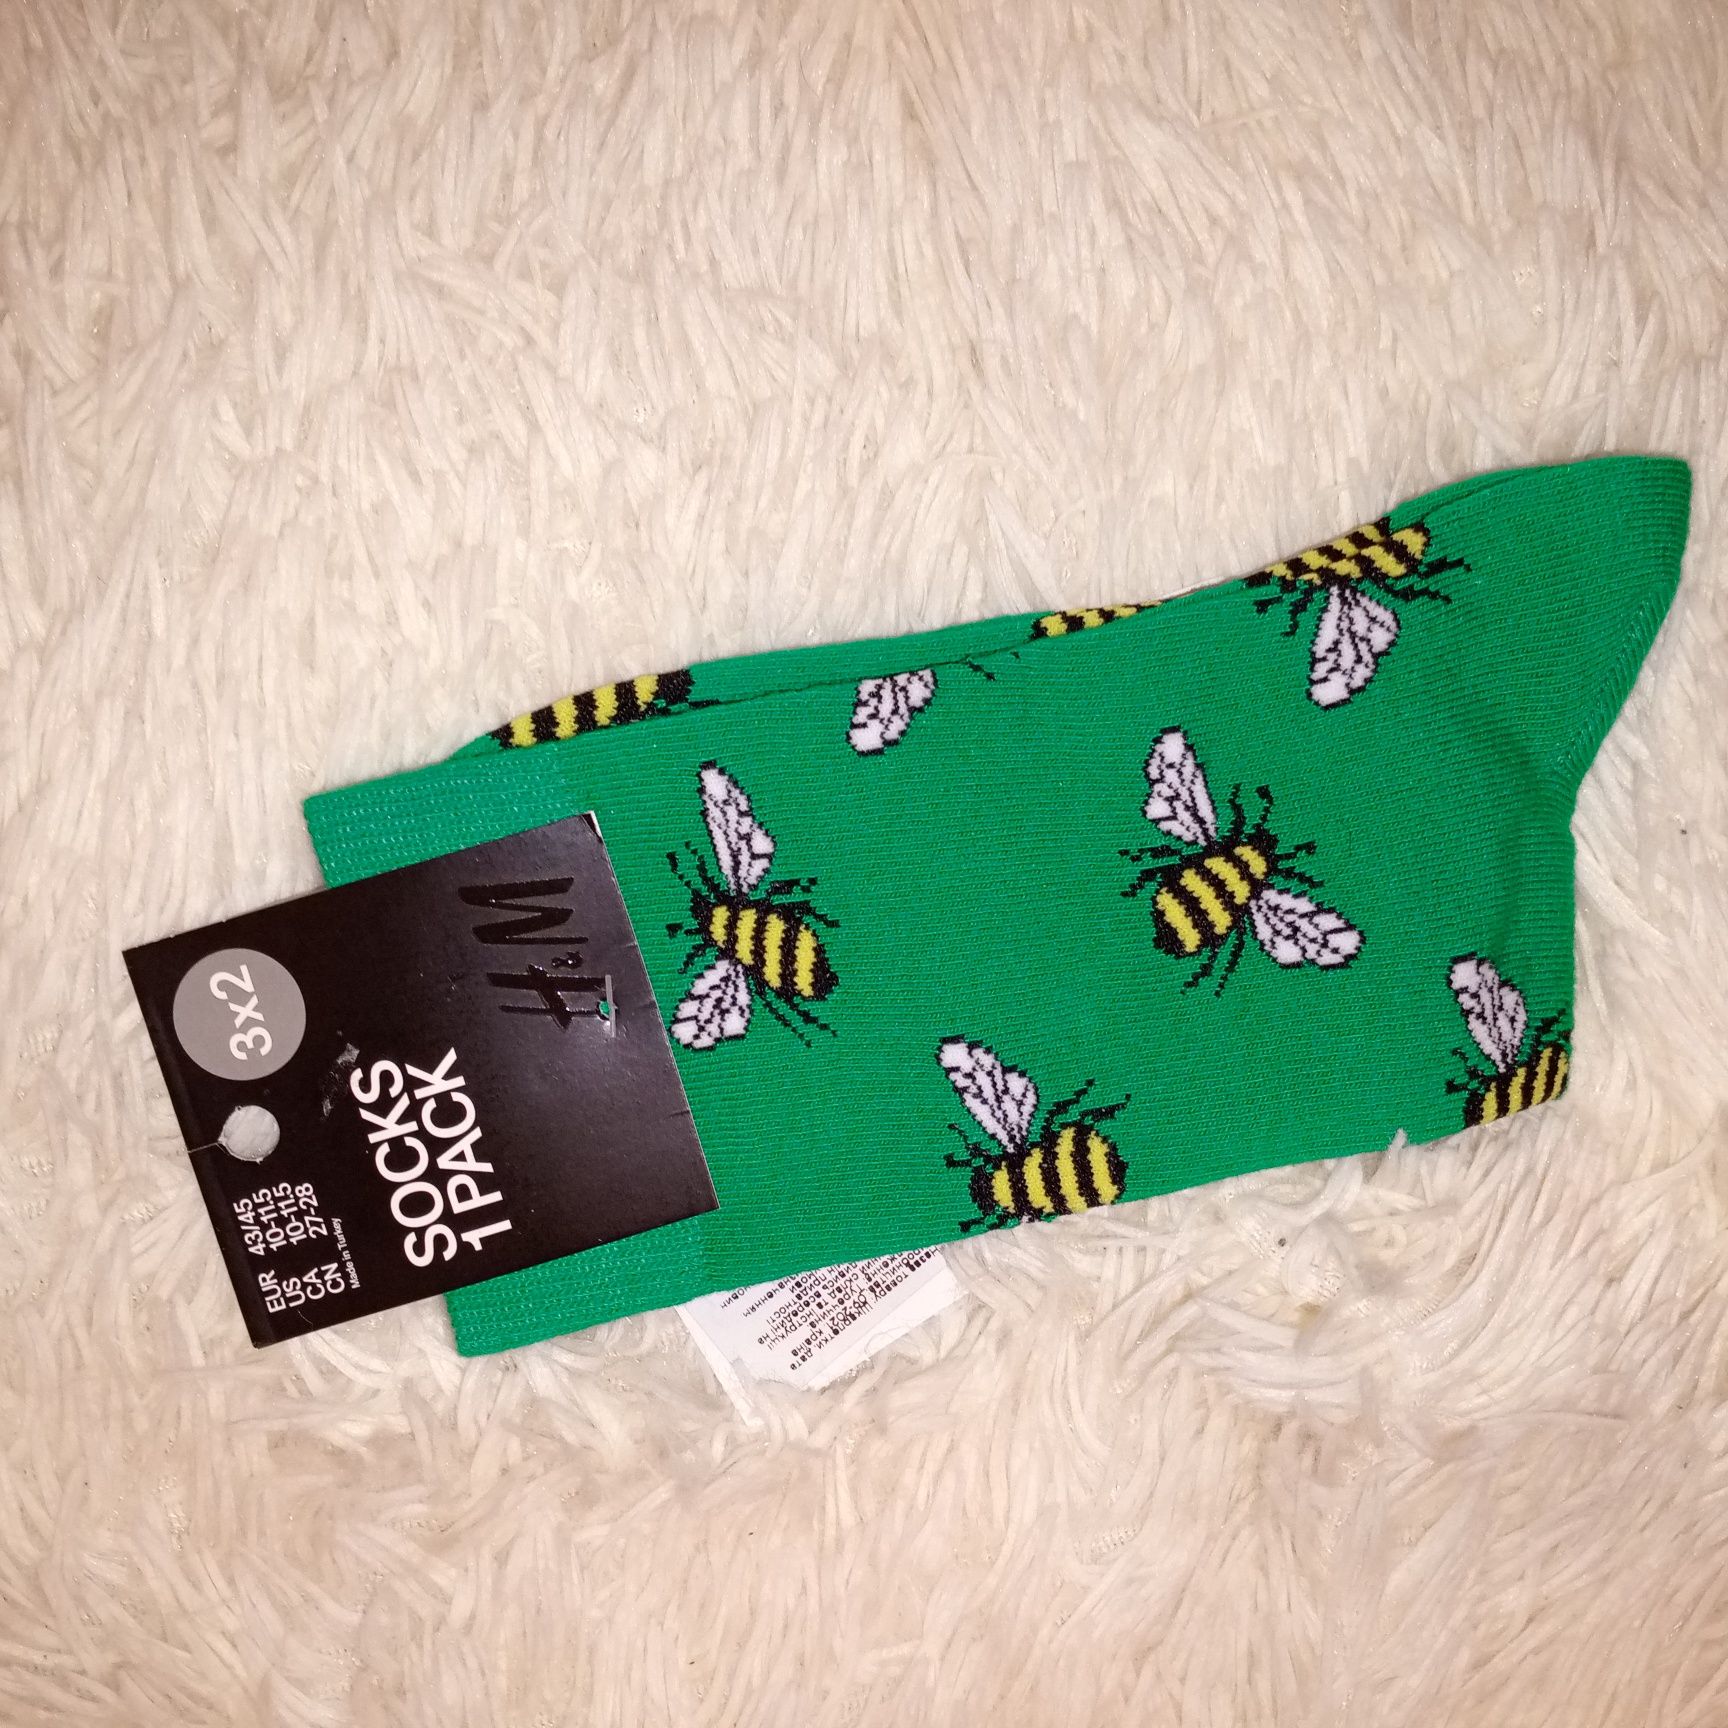 Стильный шарф и носки в подарок